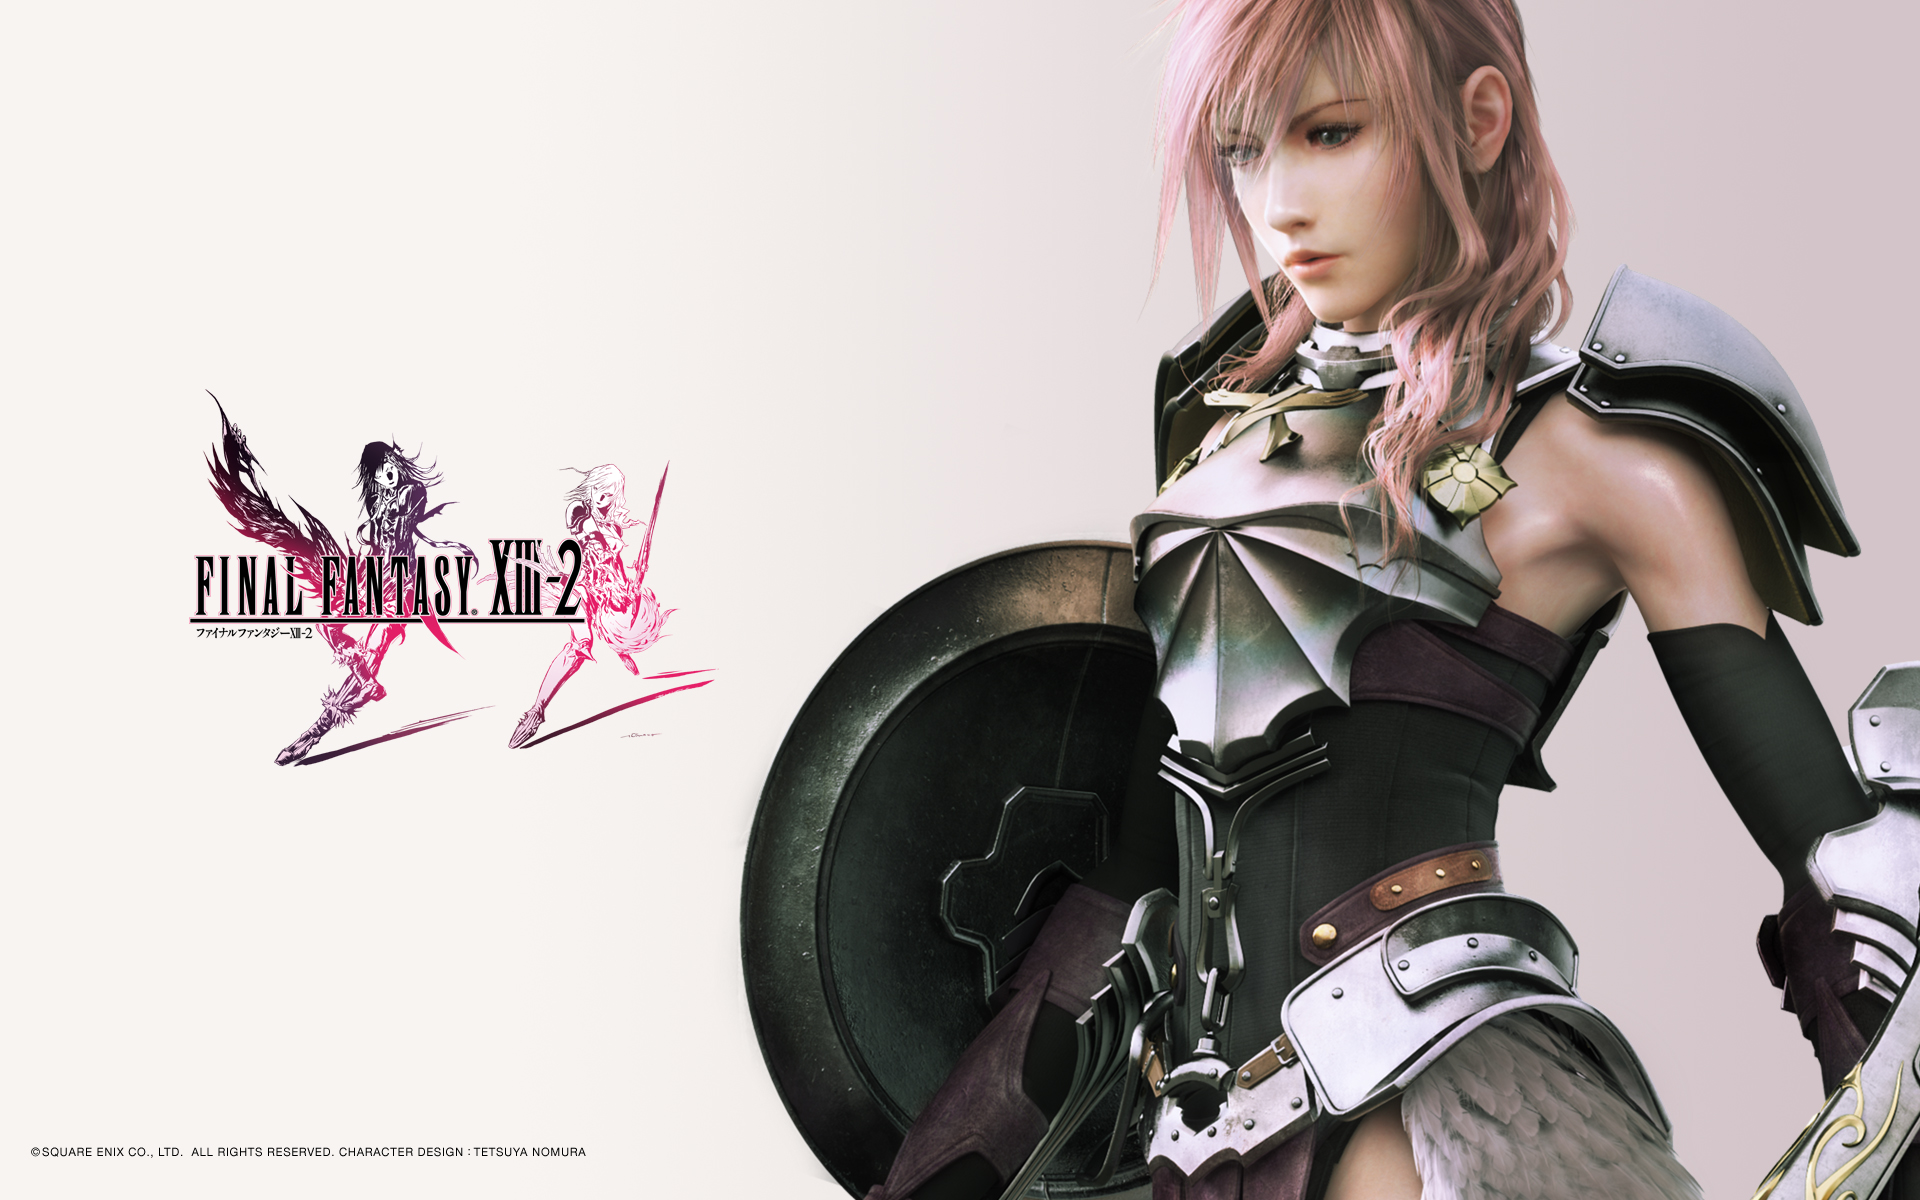 Warrior from Final Fantasy XIII-2 wielding a sword, by Lightning from Final Fantasy XIII.